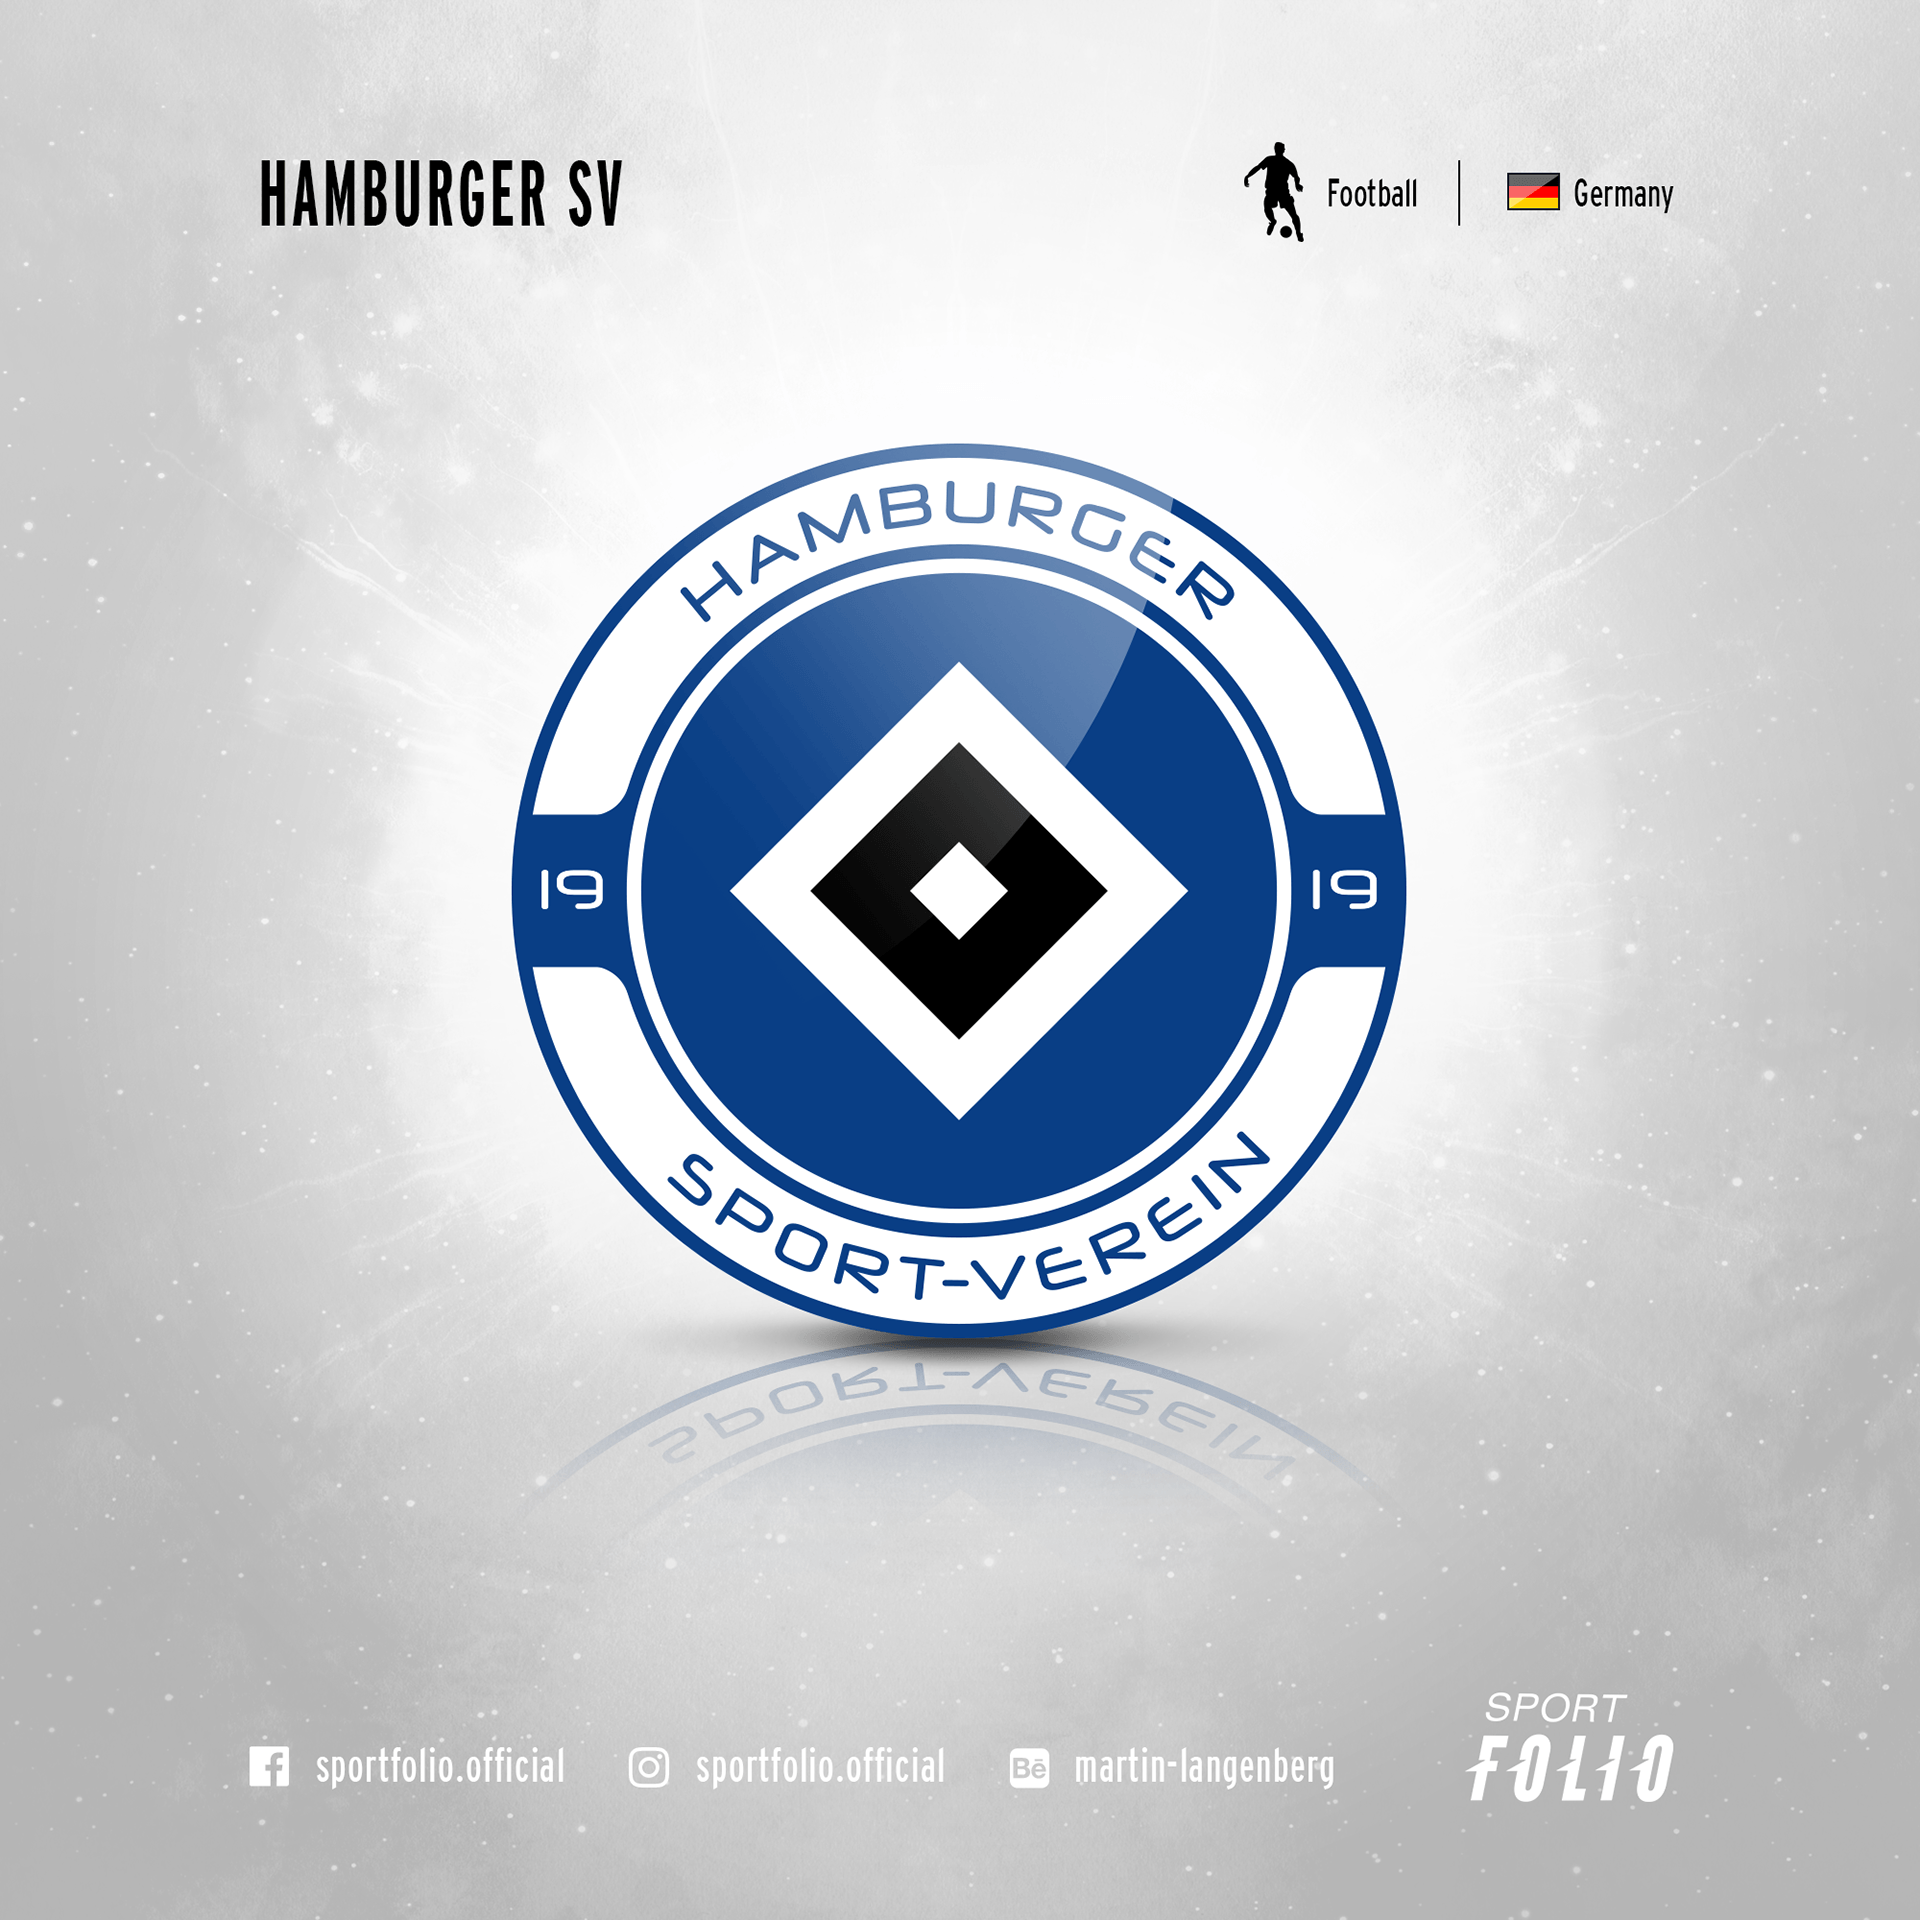 SV Logo - Hamburger SV | logo redesign on Behance